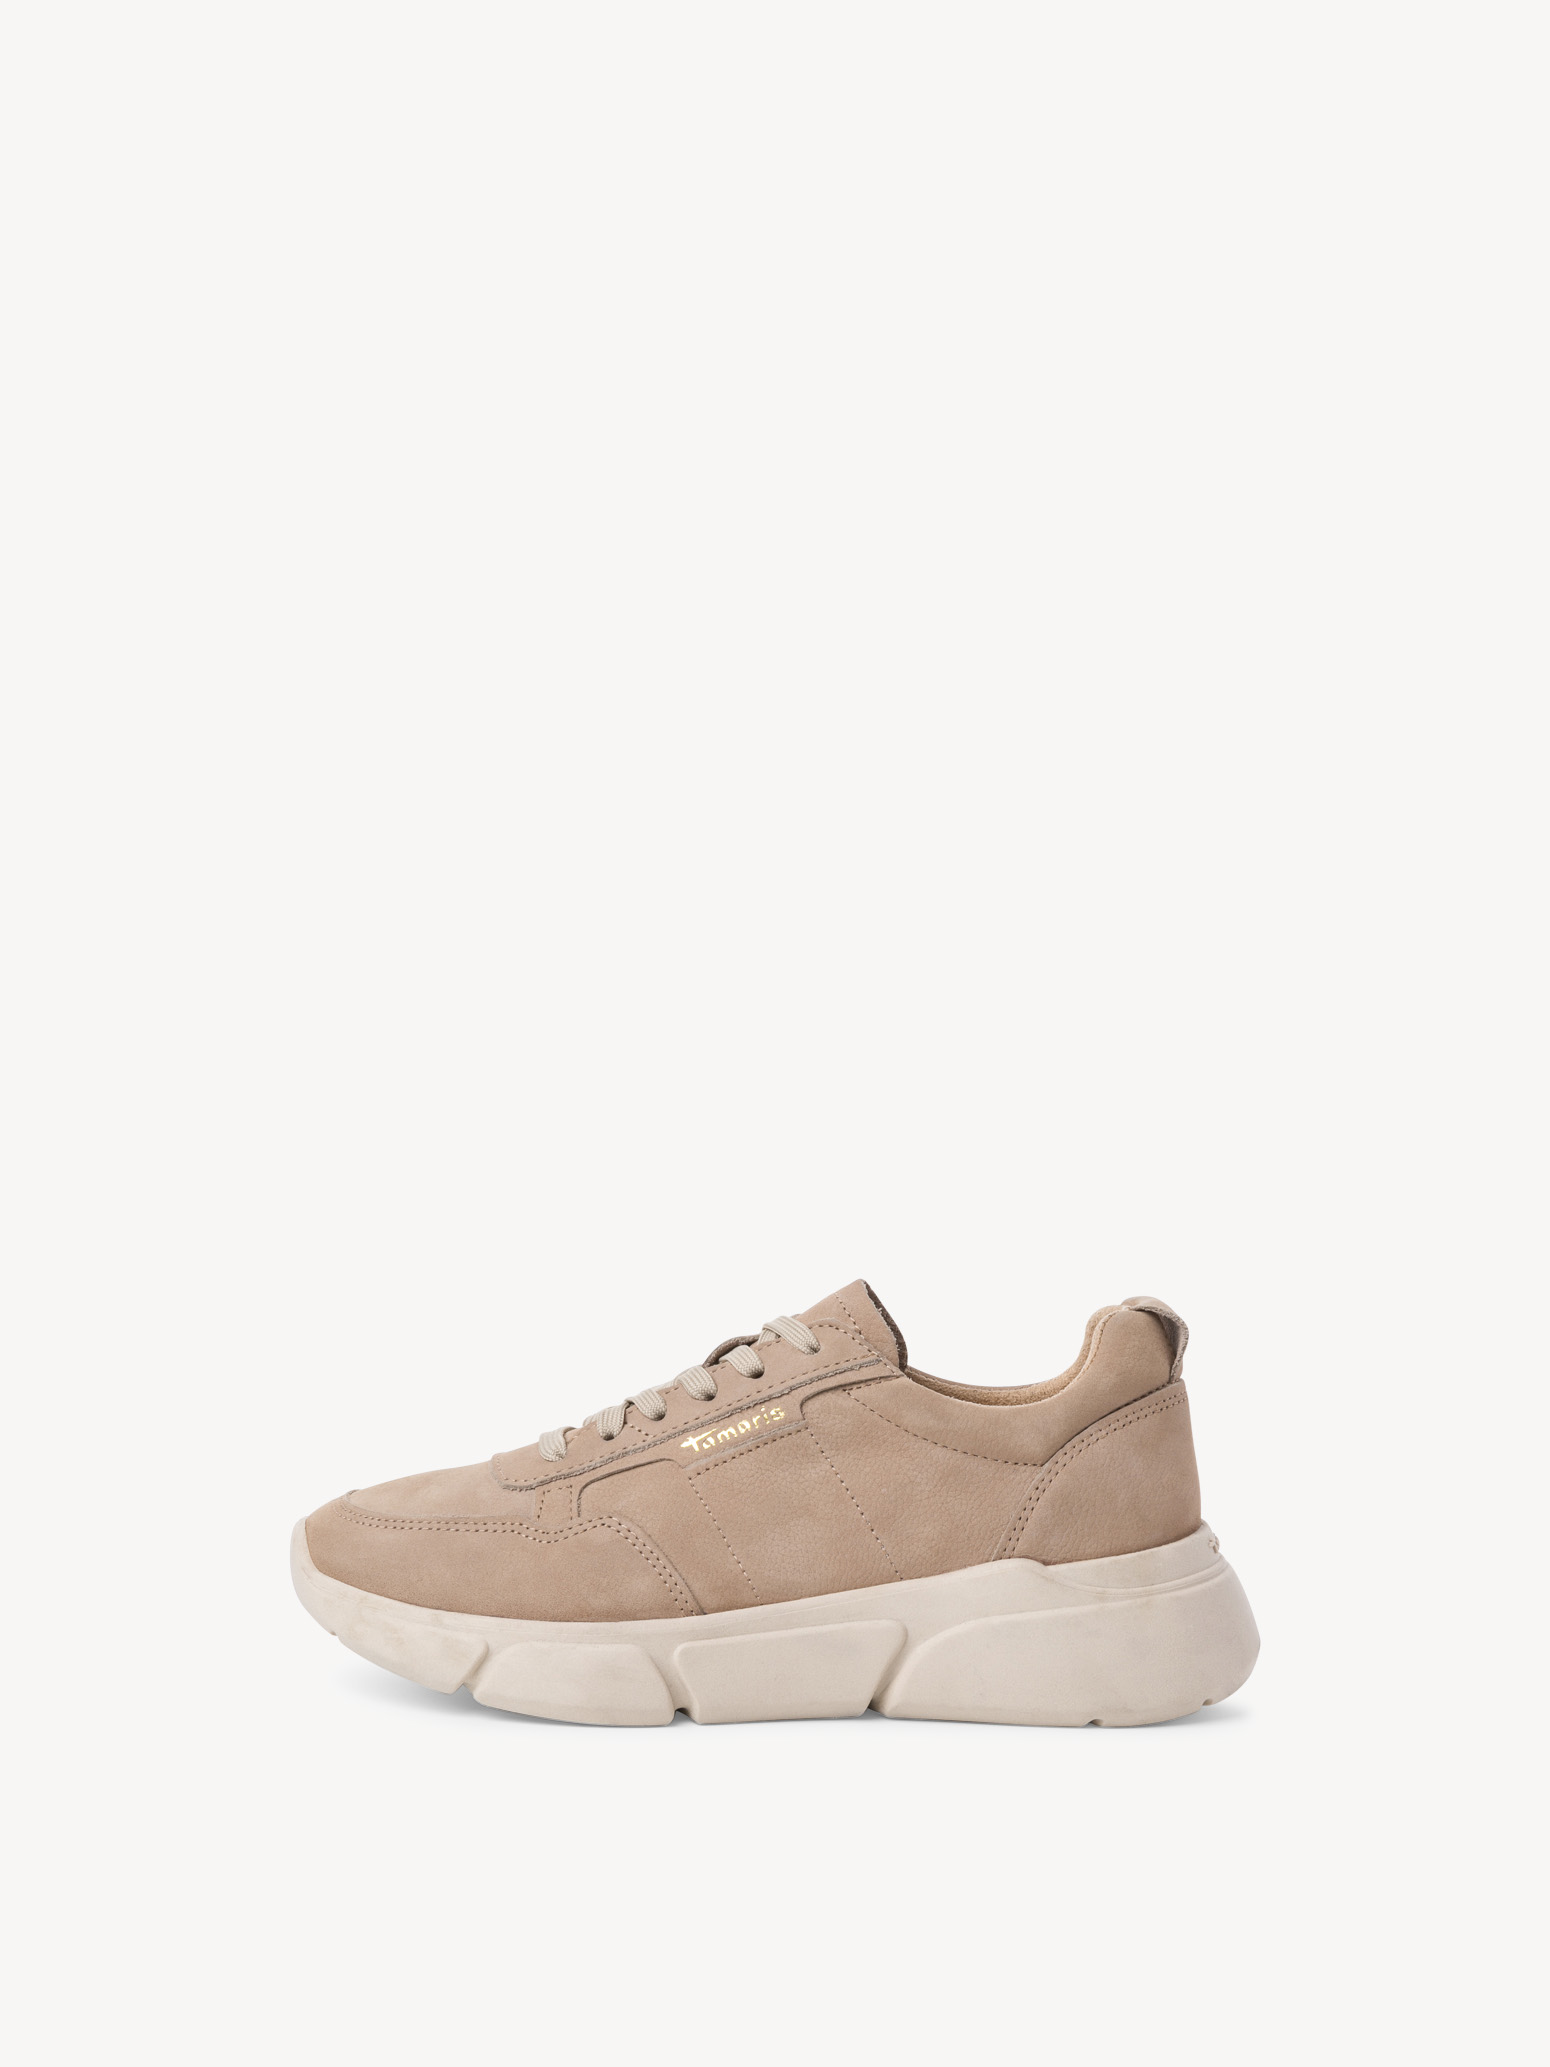 Leather Sneaker - brown 1-1-23798-29-341: Buy Tamaris online!